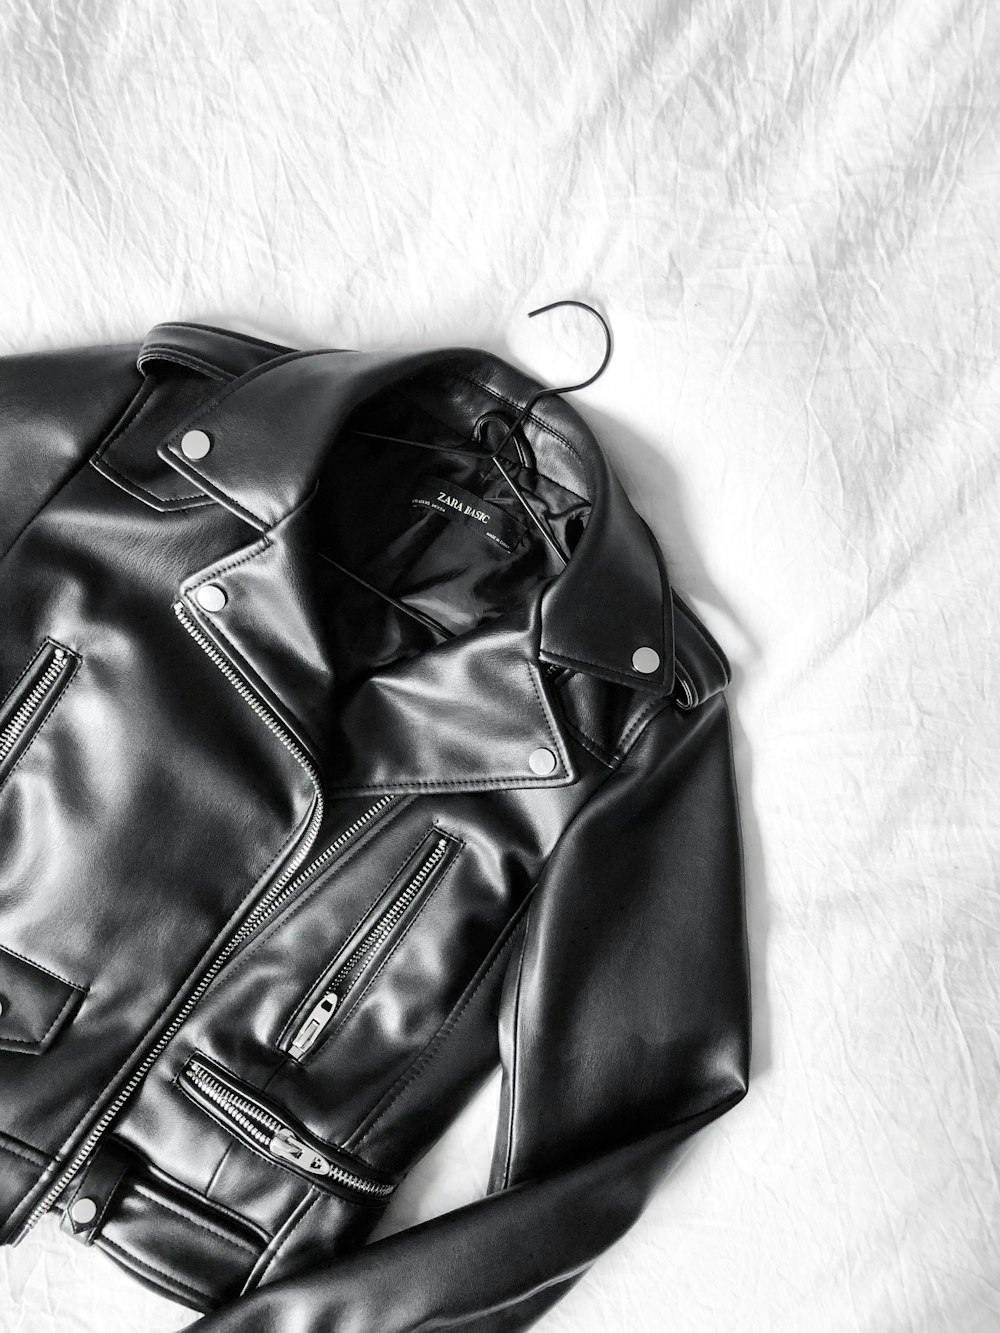 Veste zippée en cuir noir sur textile blanc